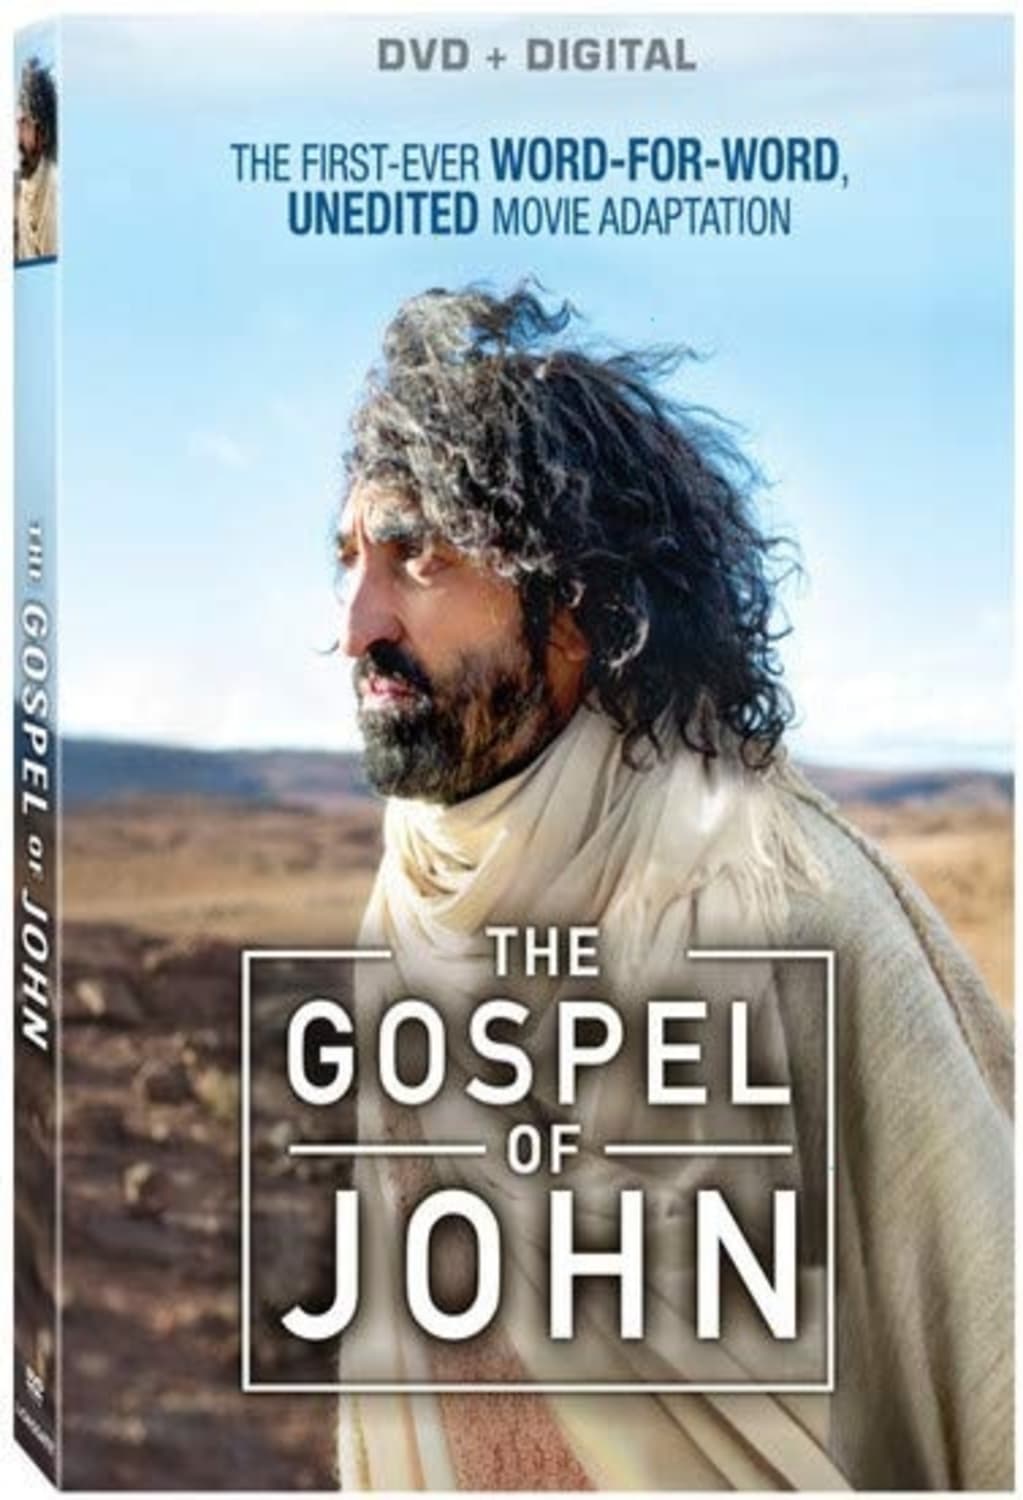 The Gospel of John (DVD) on MovieShack